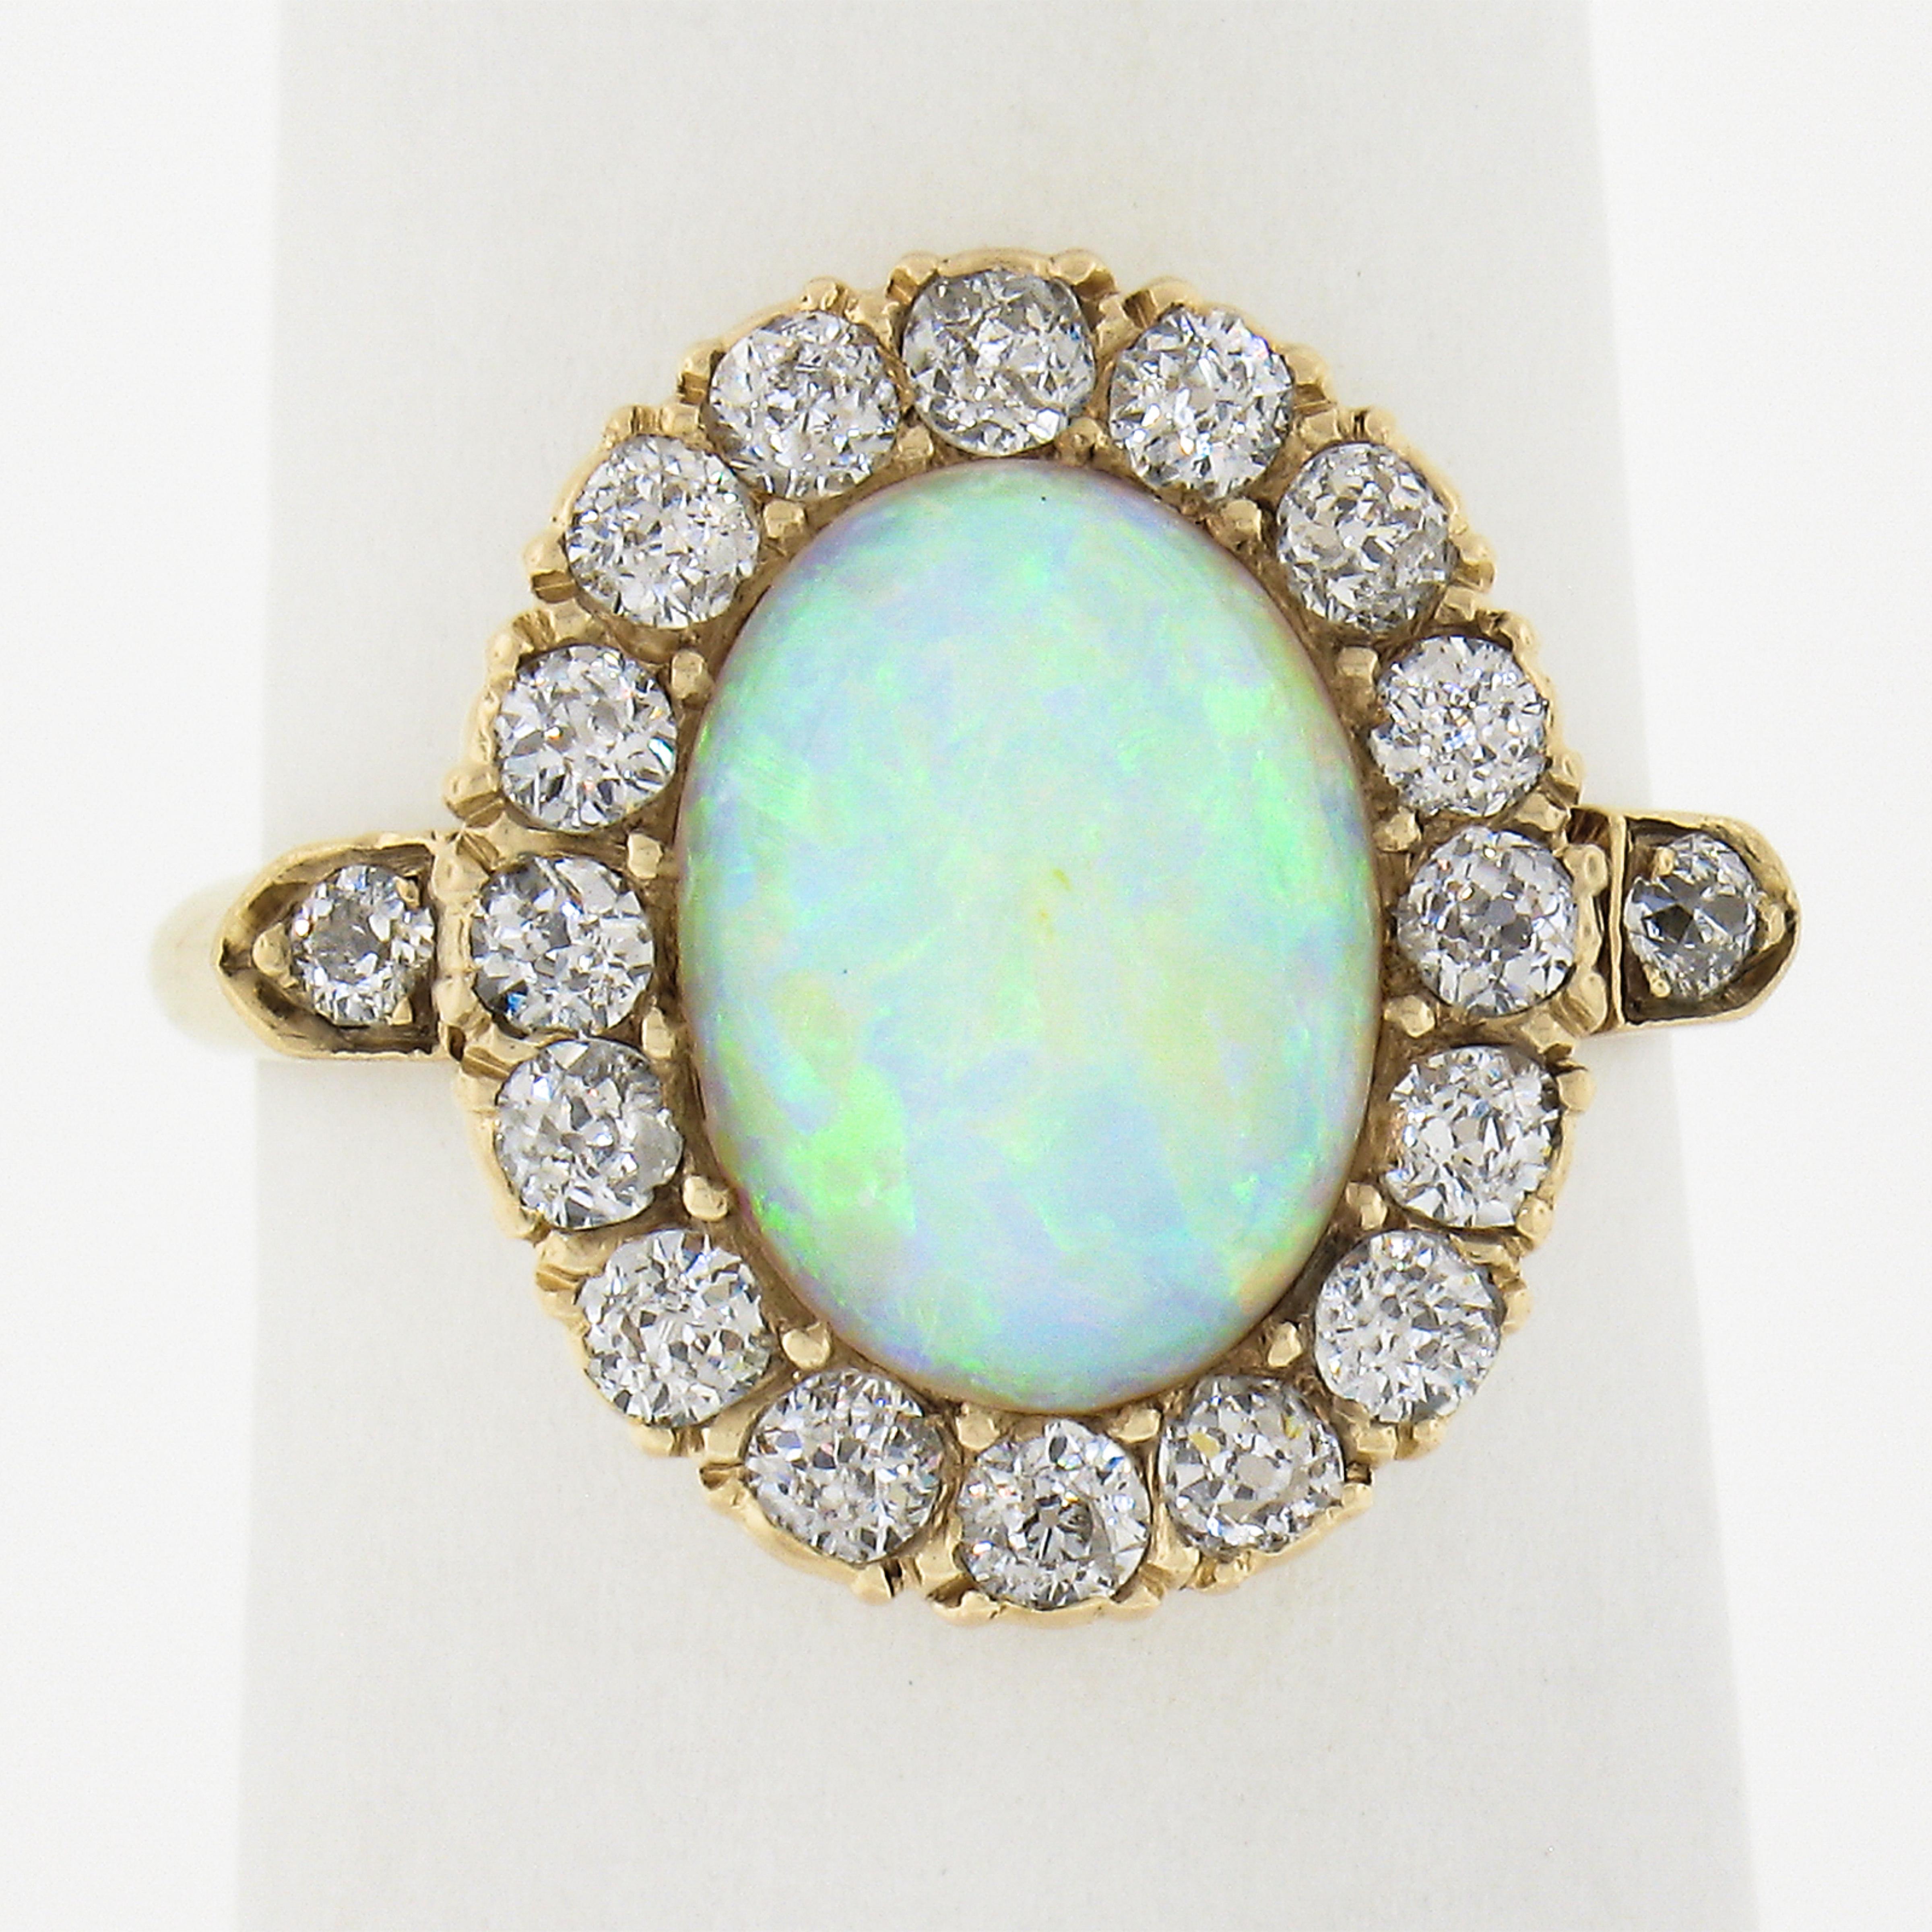 Cette très jolie bague de l'époque victorienne est fabriquée en or massif 14 carats et comporte une pierre ovale en opale cabochon qui présente des nuances vibrantes de bleu, de vert et d'orange. Le solitaire en opale est entouré d'un halo ardent